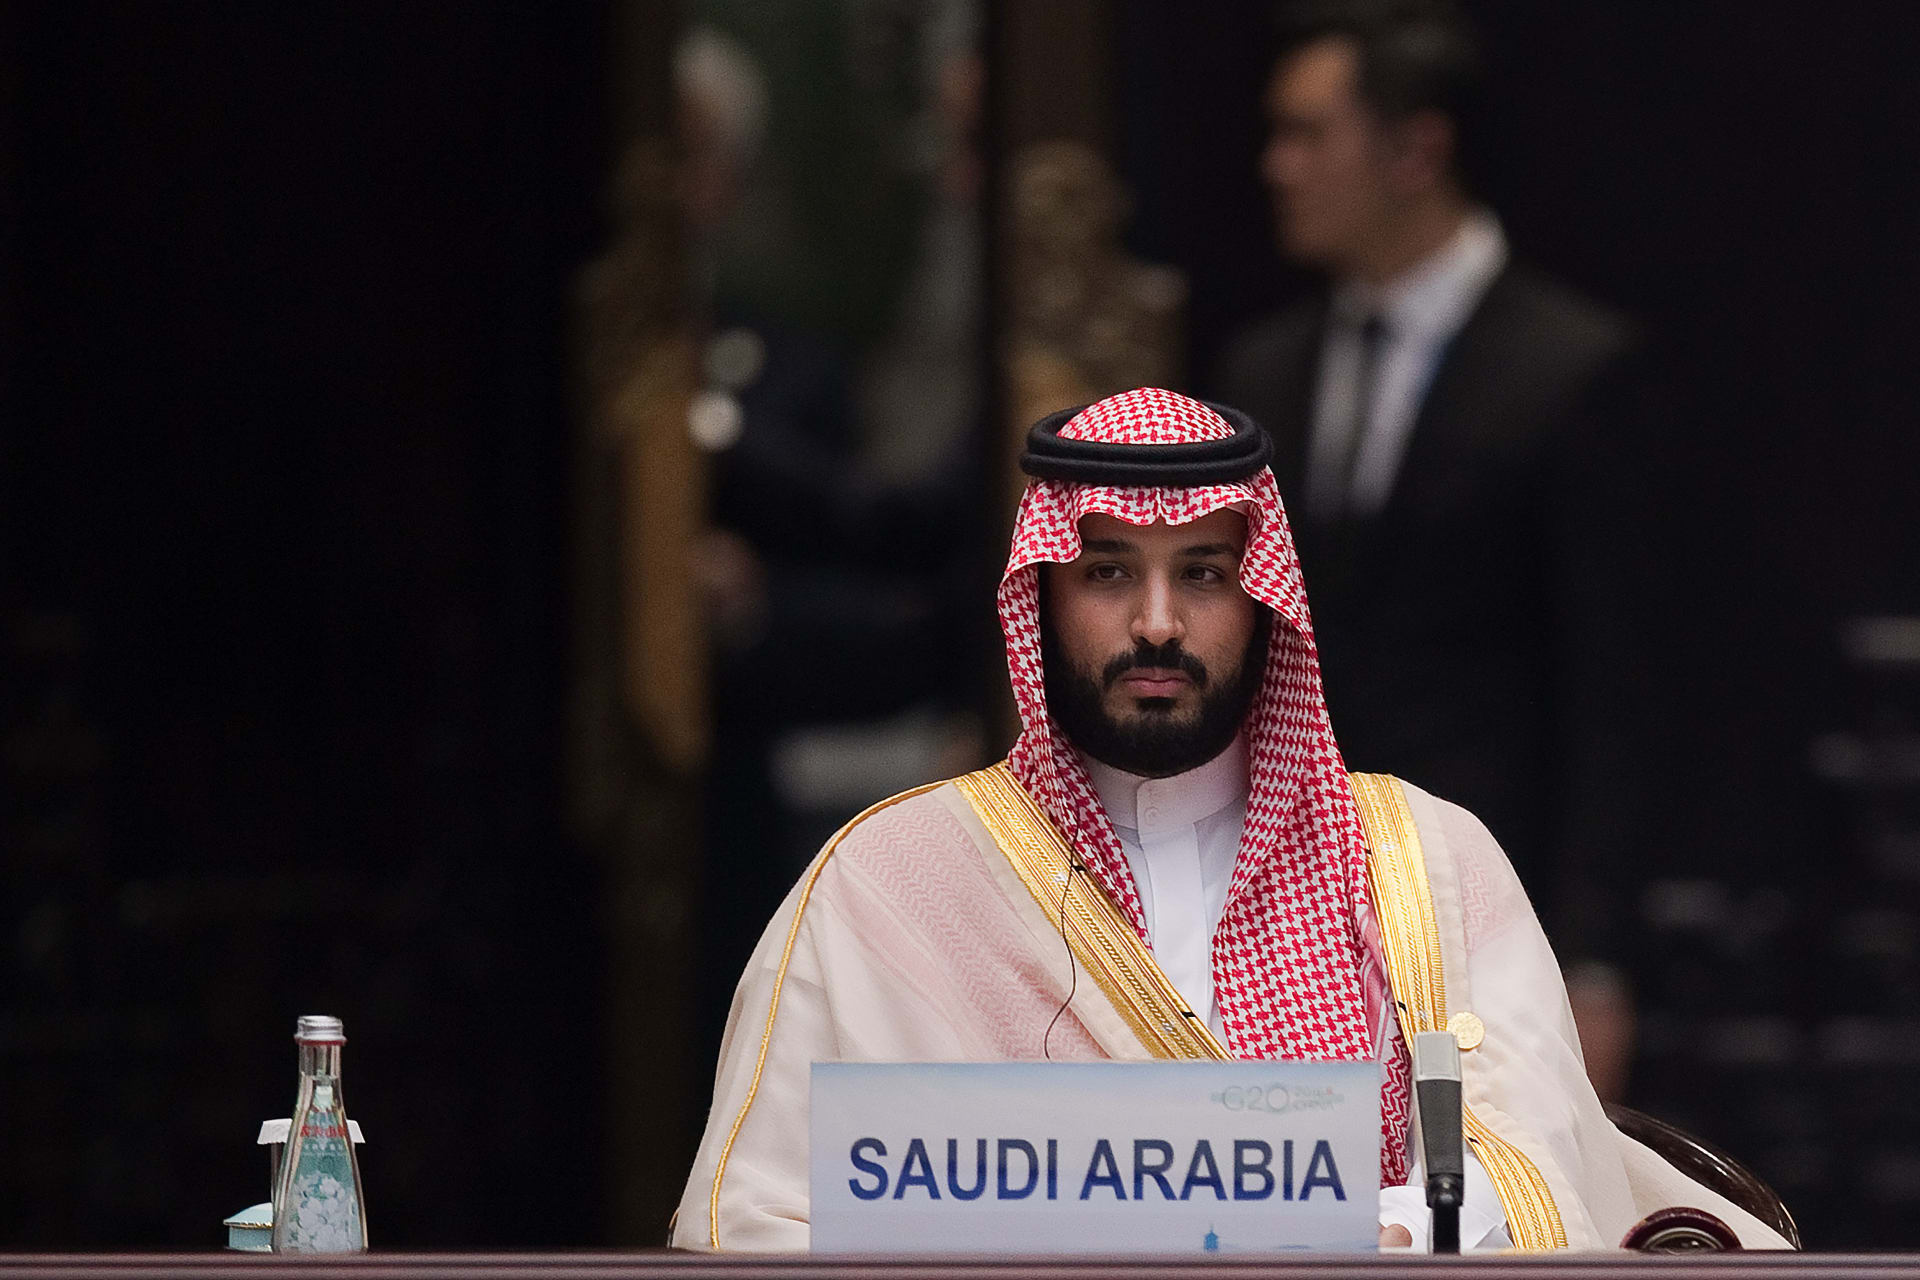 فيتش: توقيفات السعودية تفيد الإصلاح لكن تمركز السلطات يرفع المخاطر